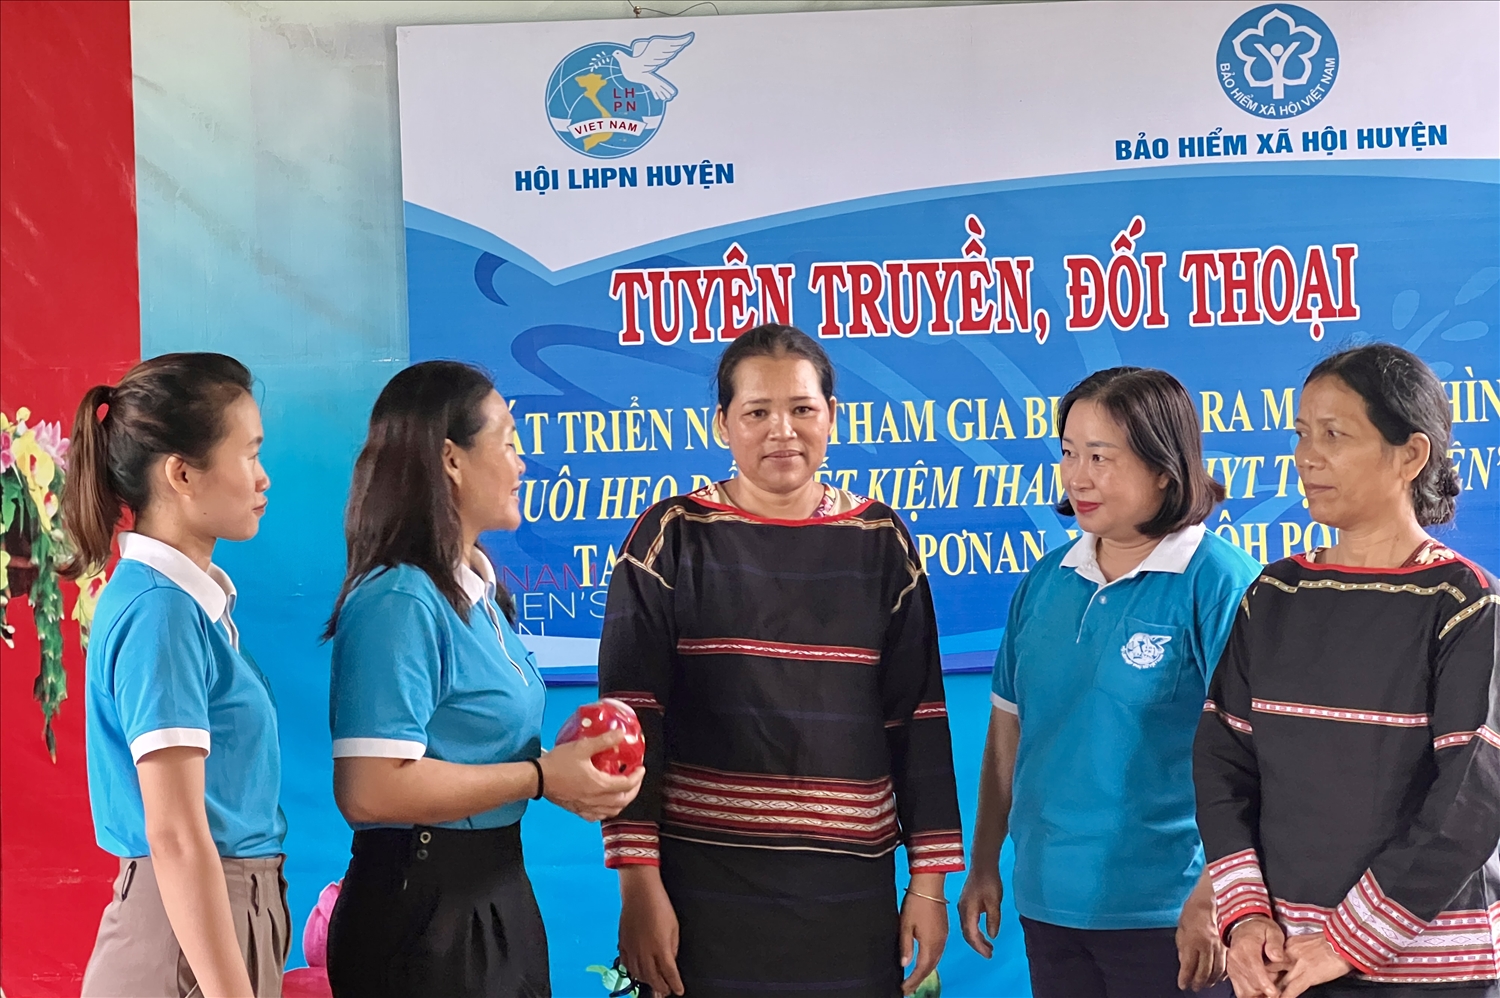 Mô hình nuôi heo đất tiết kiệm tham gia BHYT tự nguyện của Hội LHPN huyện Phú Thiện 